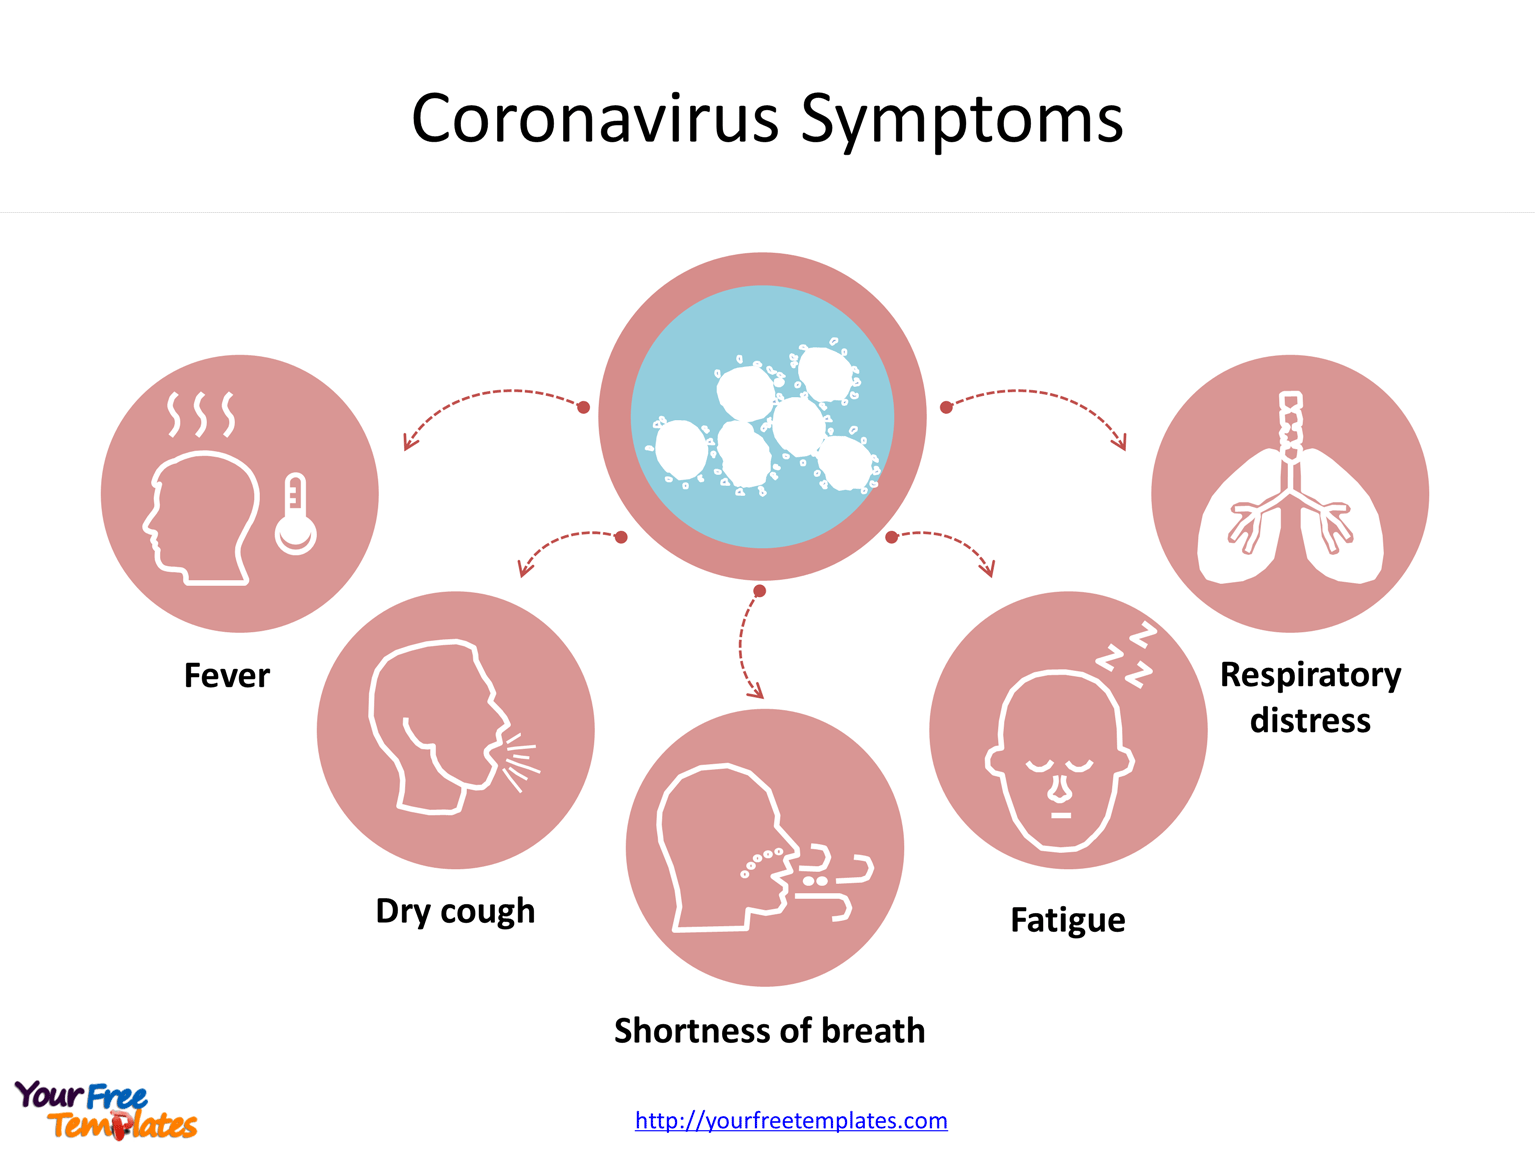 Coronavirus Symptoms infographic icons